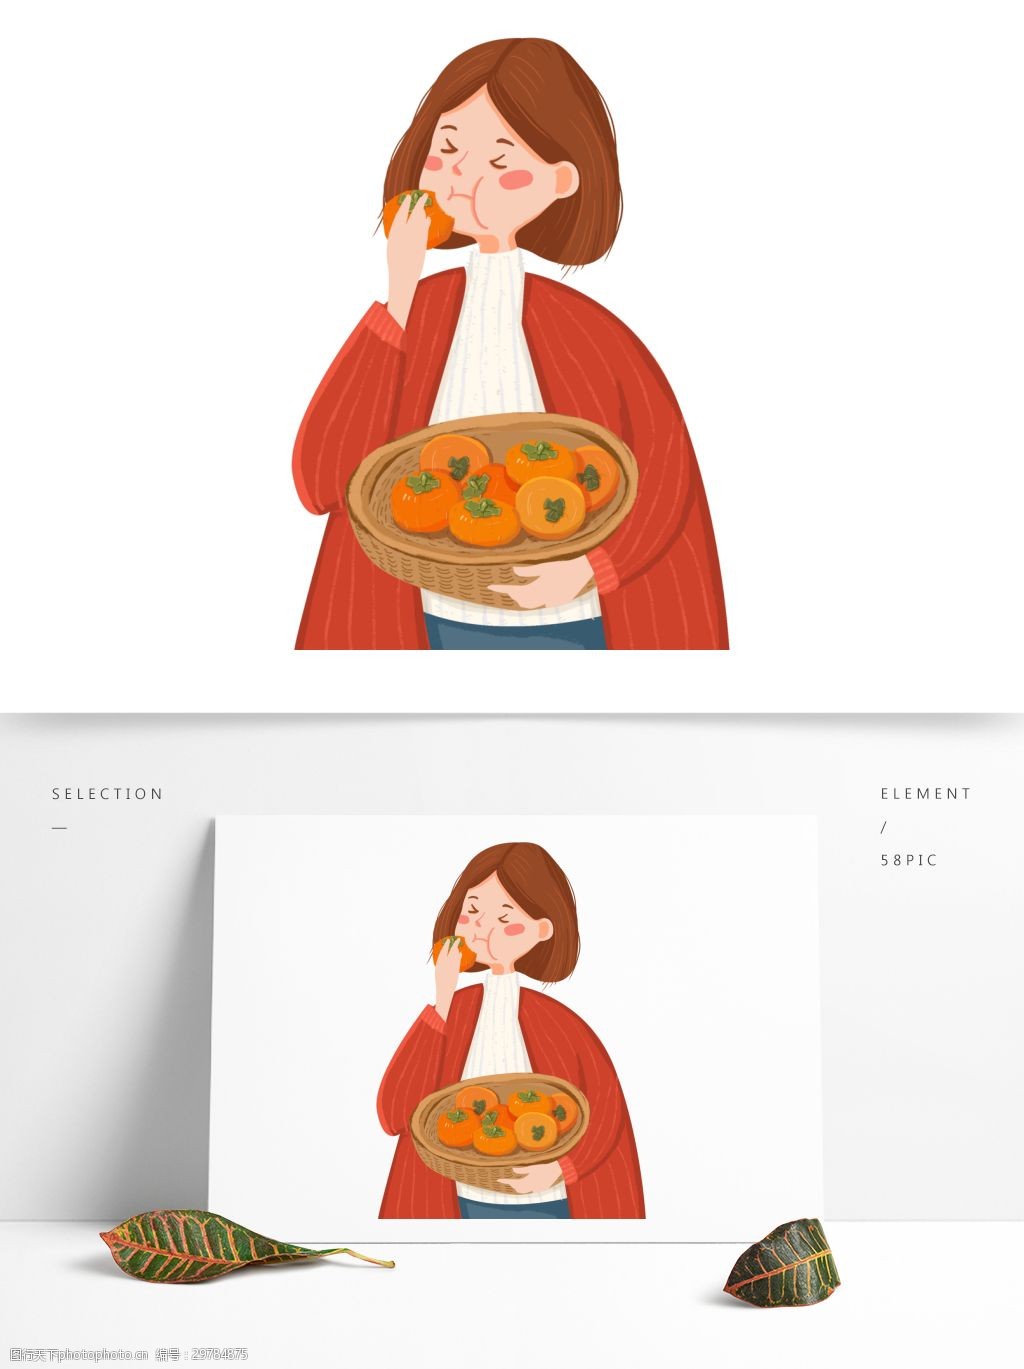 津津有味吃柿子的女孩插画人物可商用元素